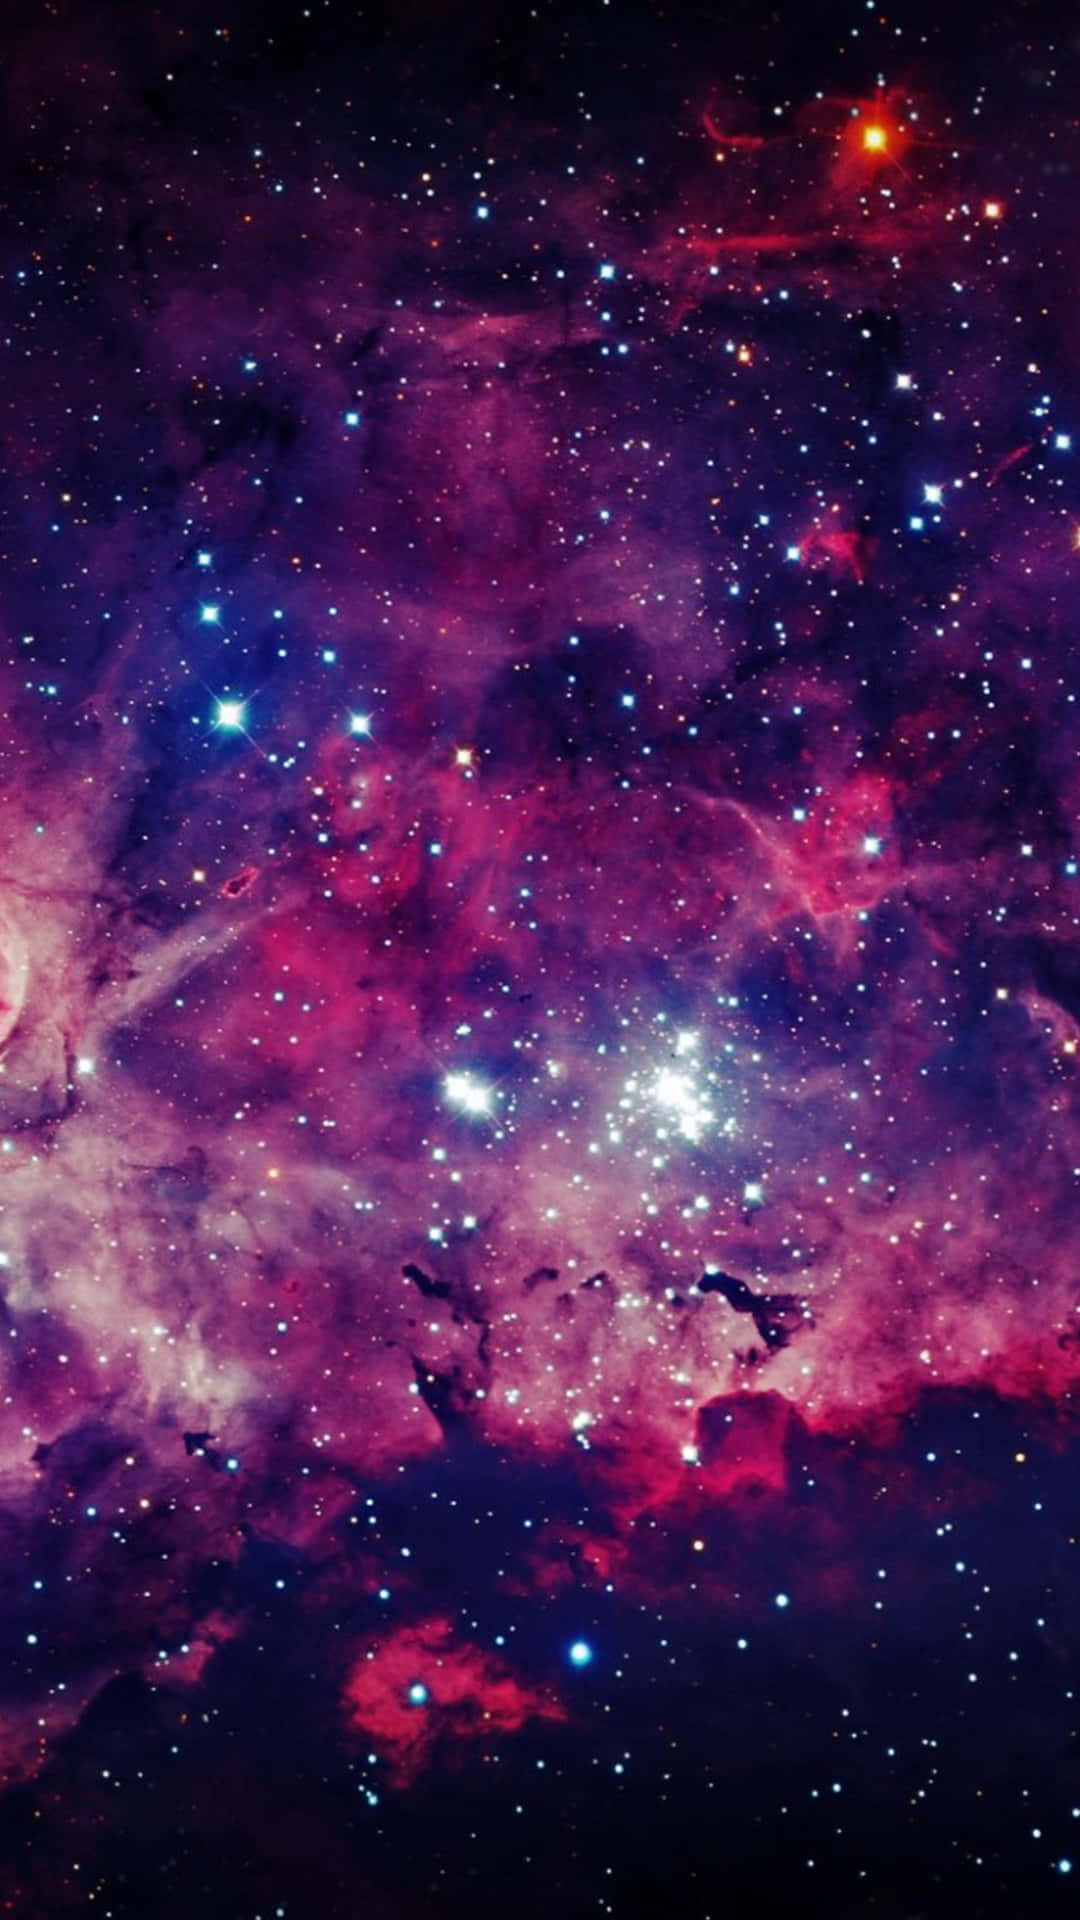 Udforsk Mysteriet af et Smukke Galakse Wallpaper